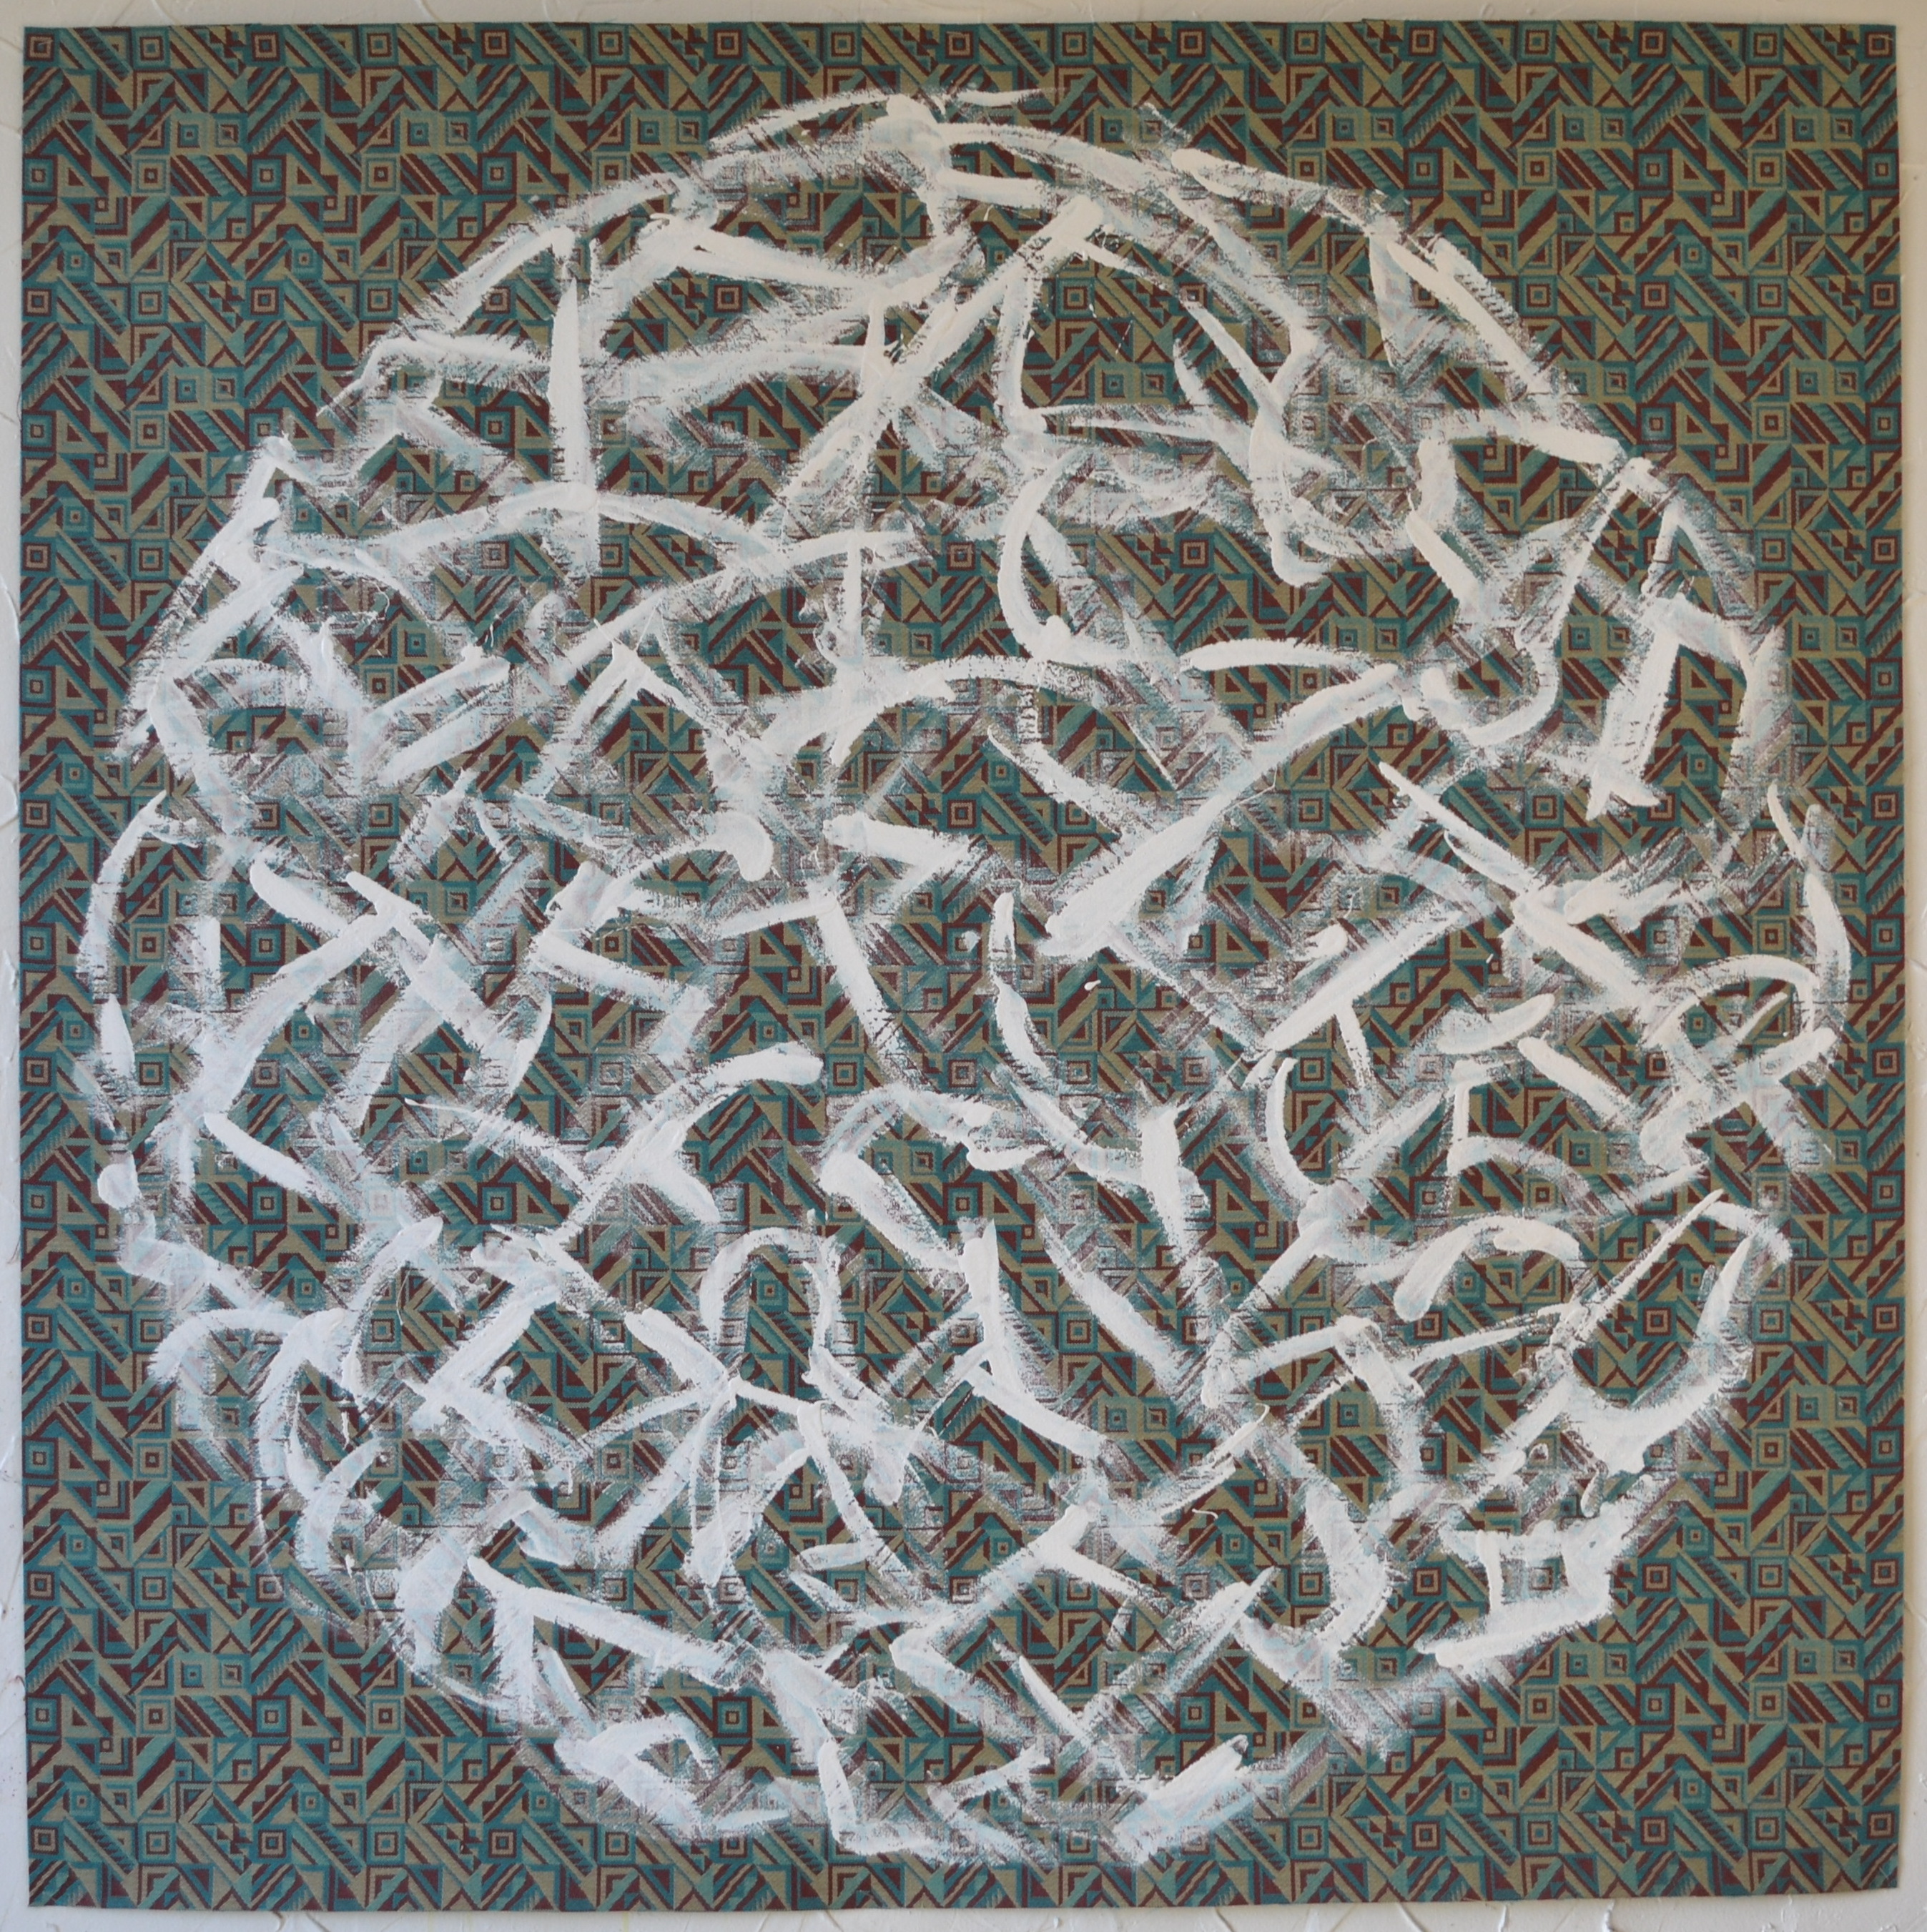 Mappemonde Peinture, acrylique sur tissu libre, 131 x 131 cm